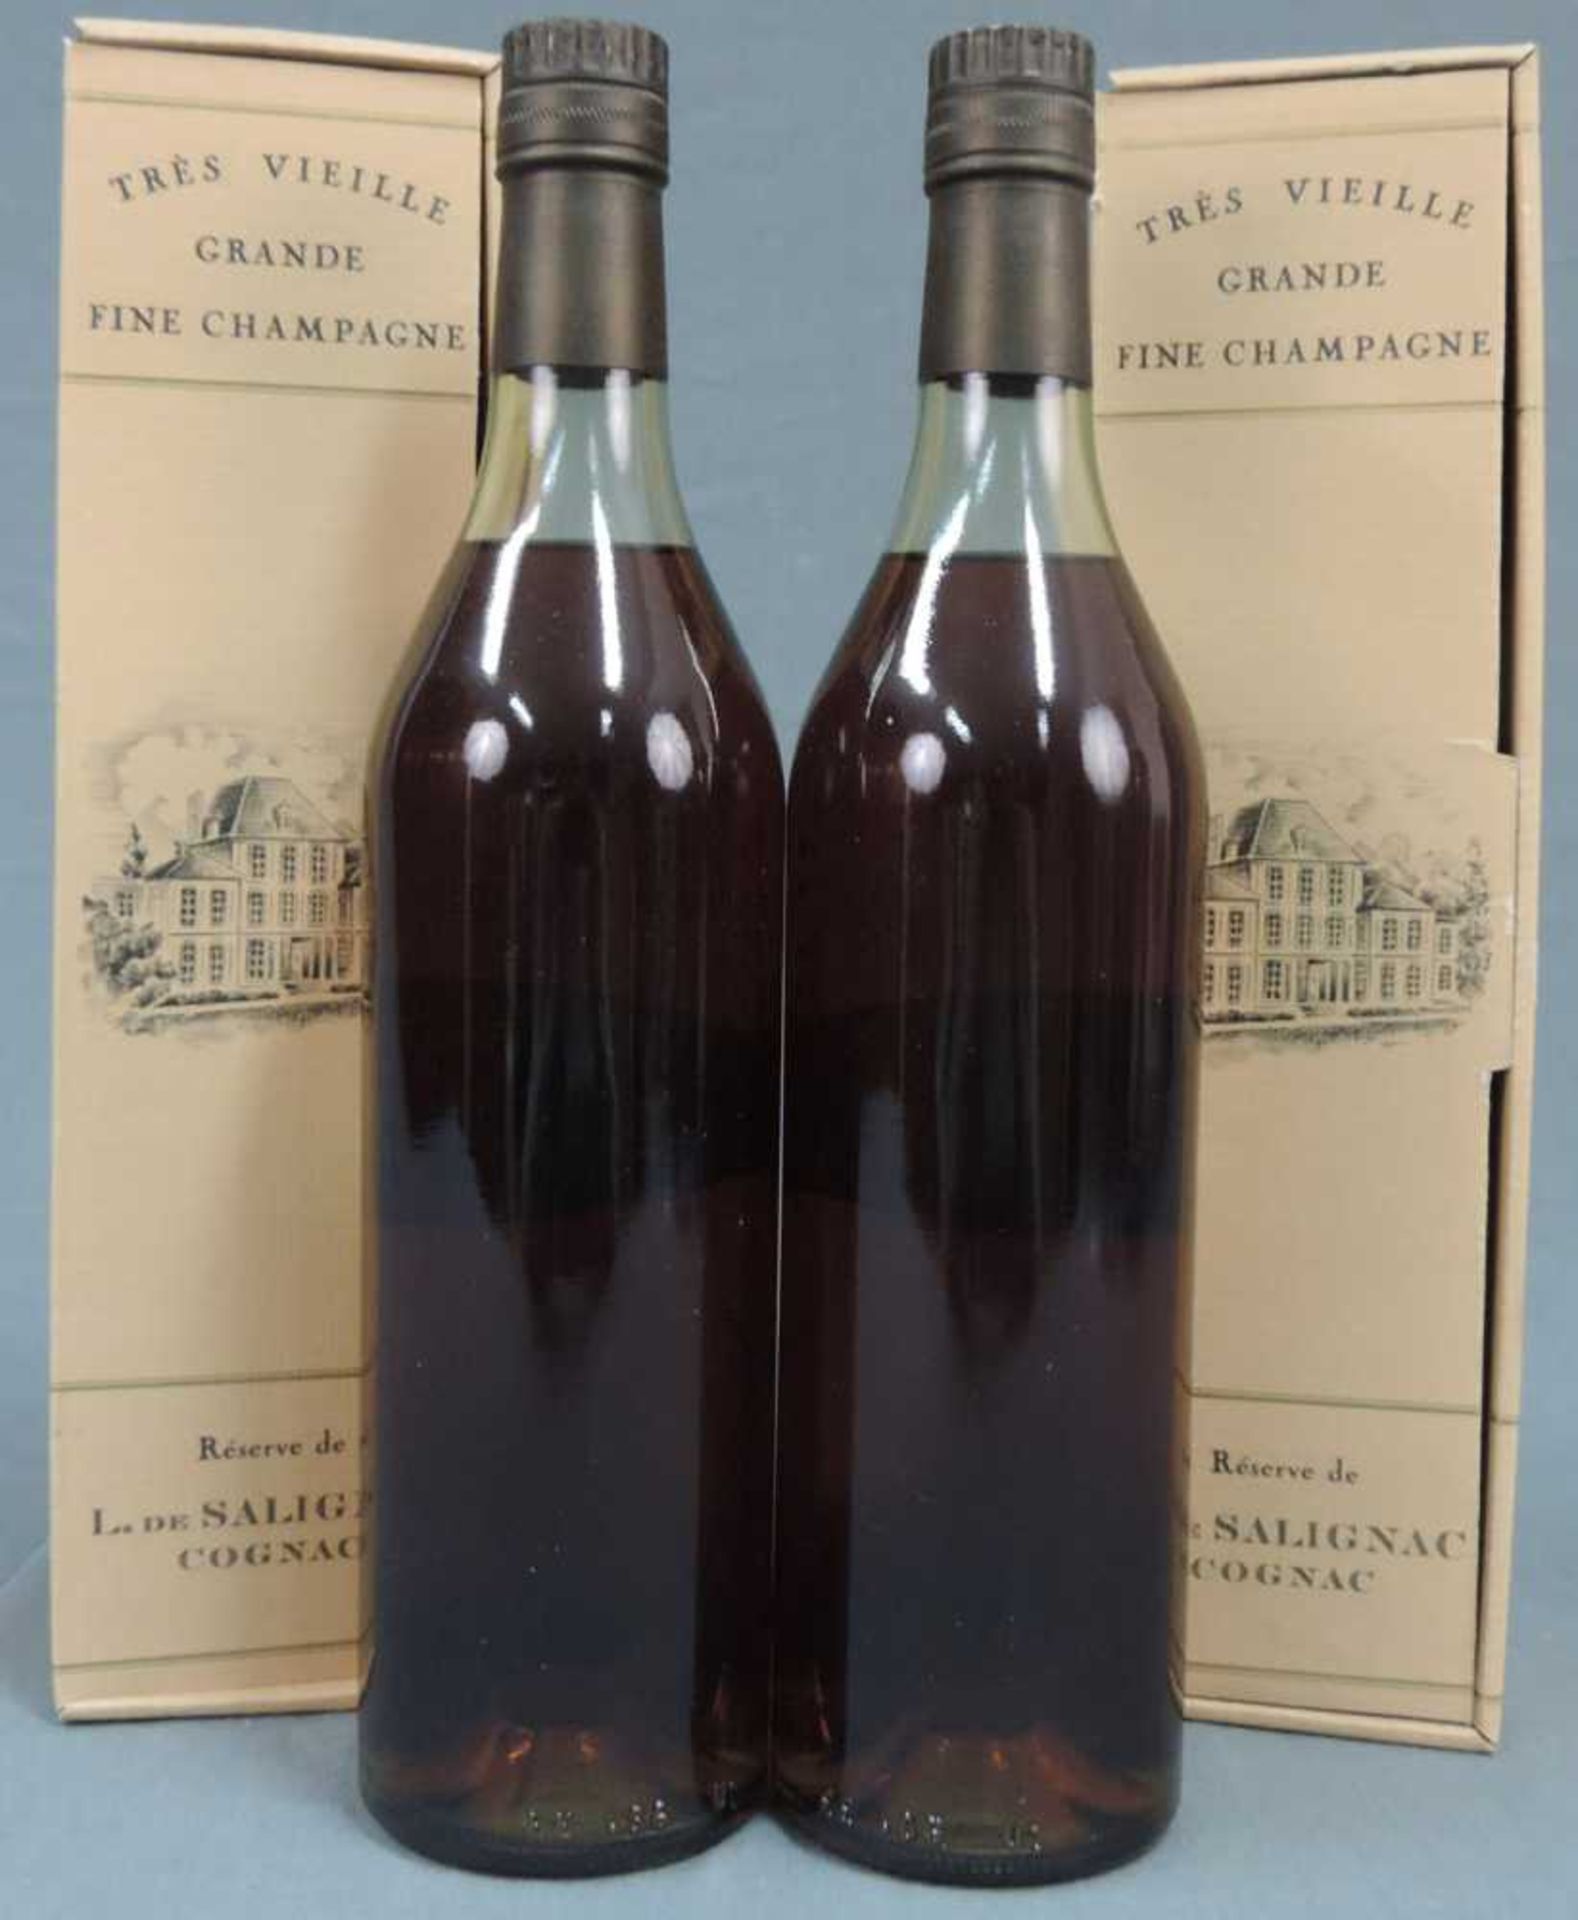 2 Flaschen Très Vieille Grand fine Champagne, Reserve de L. de Salignac Cognac. 43% 70cl. In - Bild 4 aus 4